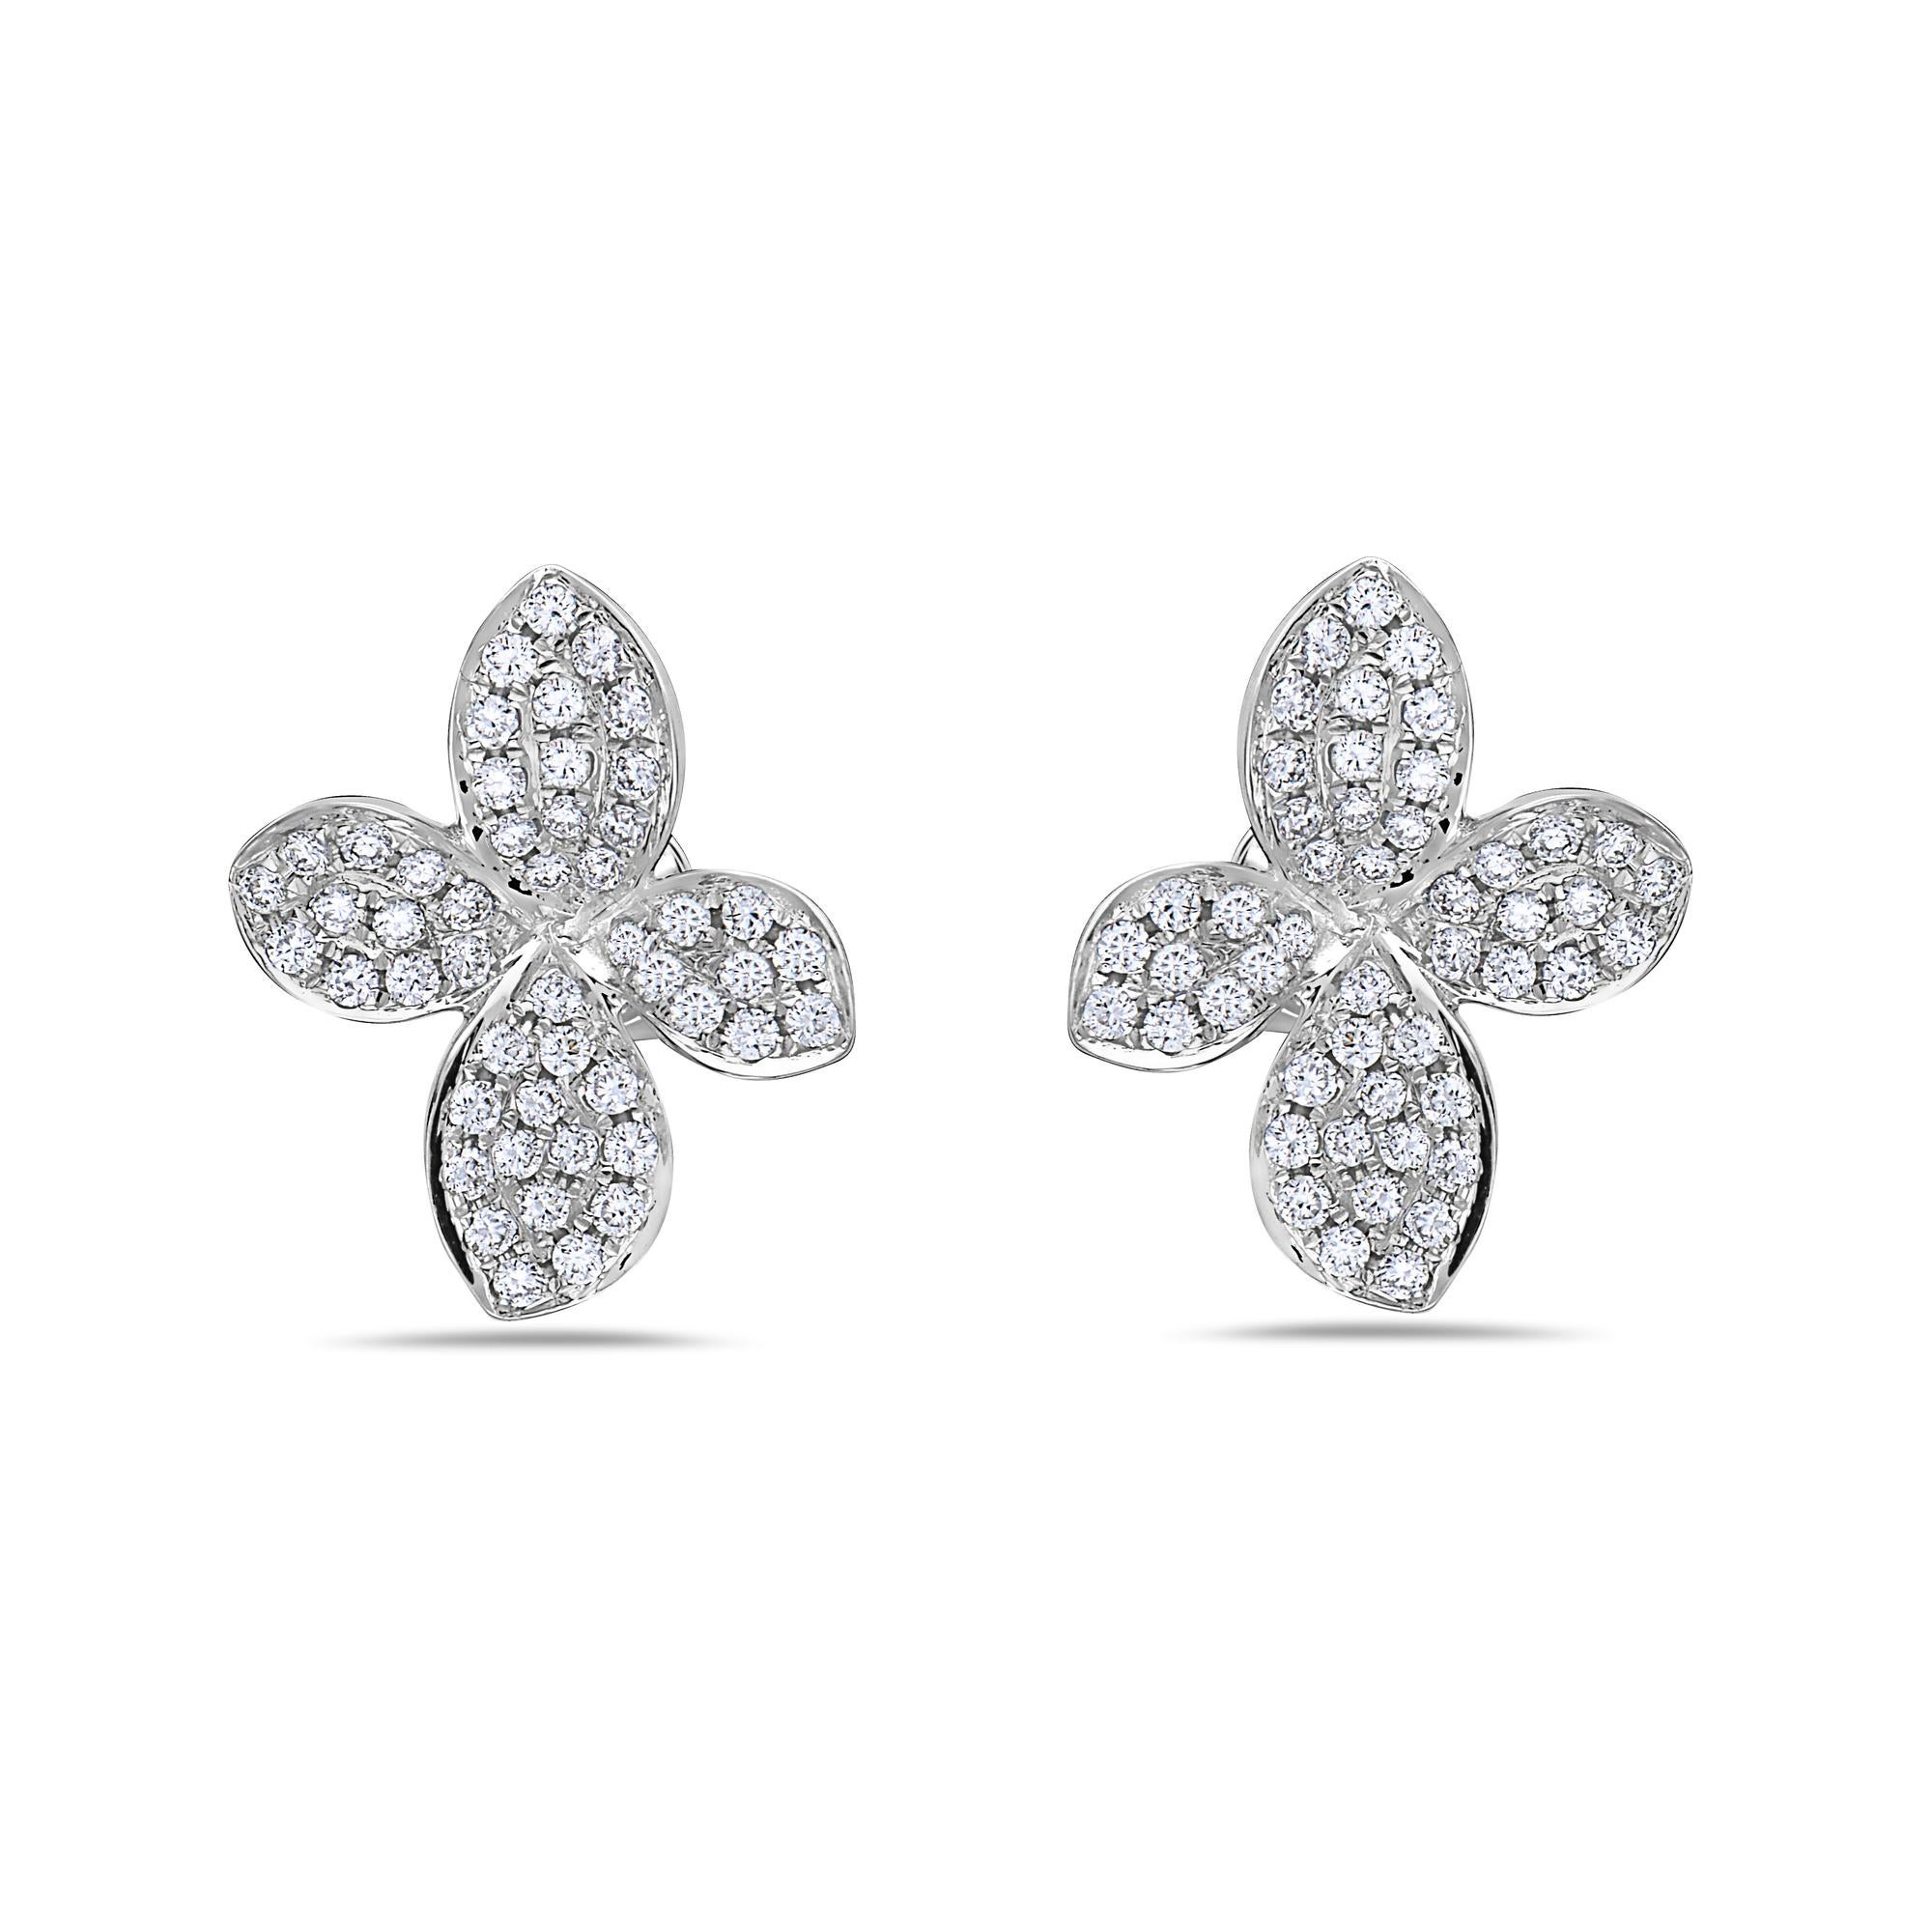 Die Afarin Collection Pavé Petite Garden Diamond Stud Earrings sind mit 49 runden Diamanten im Brillantschliff mit einem Gesamtgewicht von 0,68 ct in 18K Weißgold ausgestattet.
Alle Diamanten sind F in Farbe, VS in Reinheit,
Ausgezeichnete Marke und